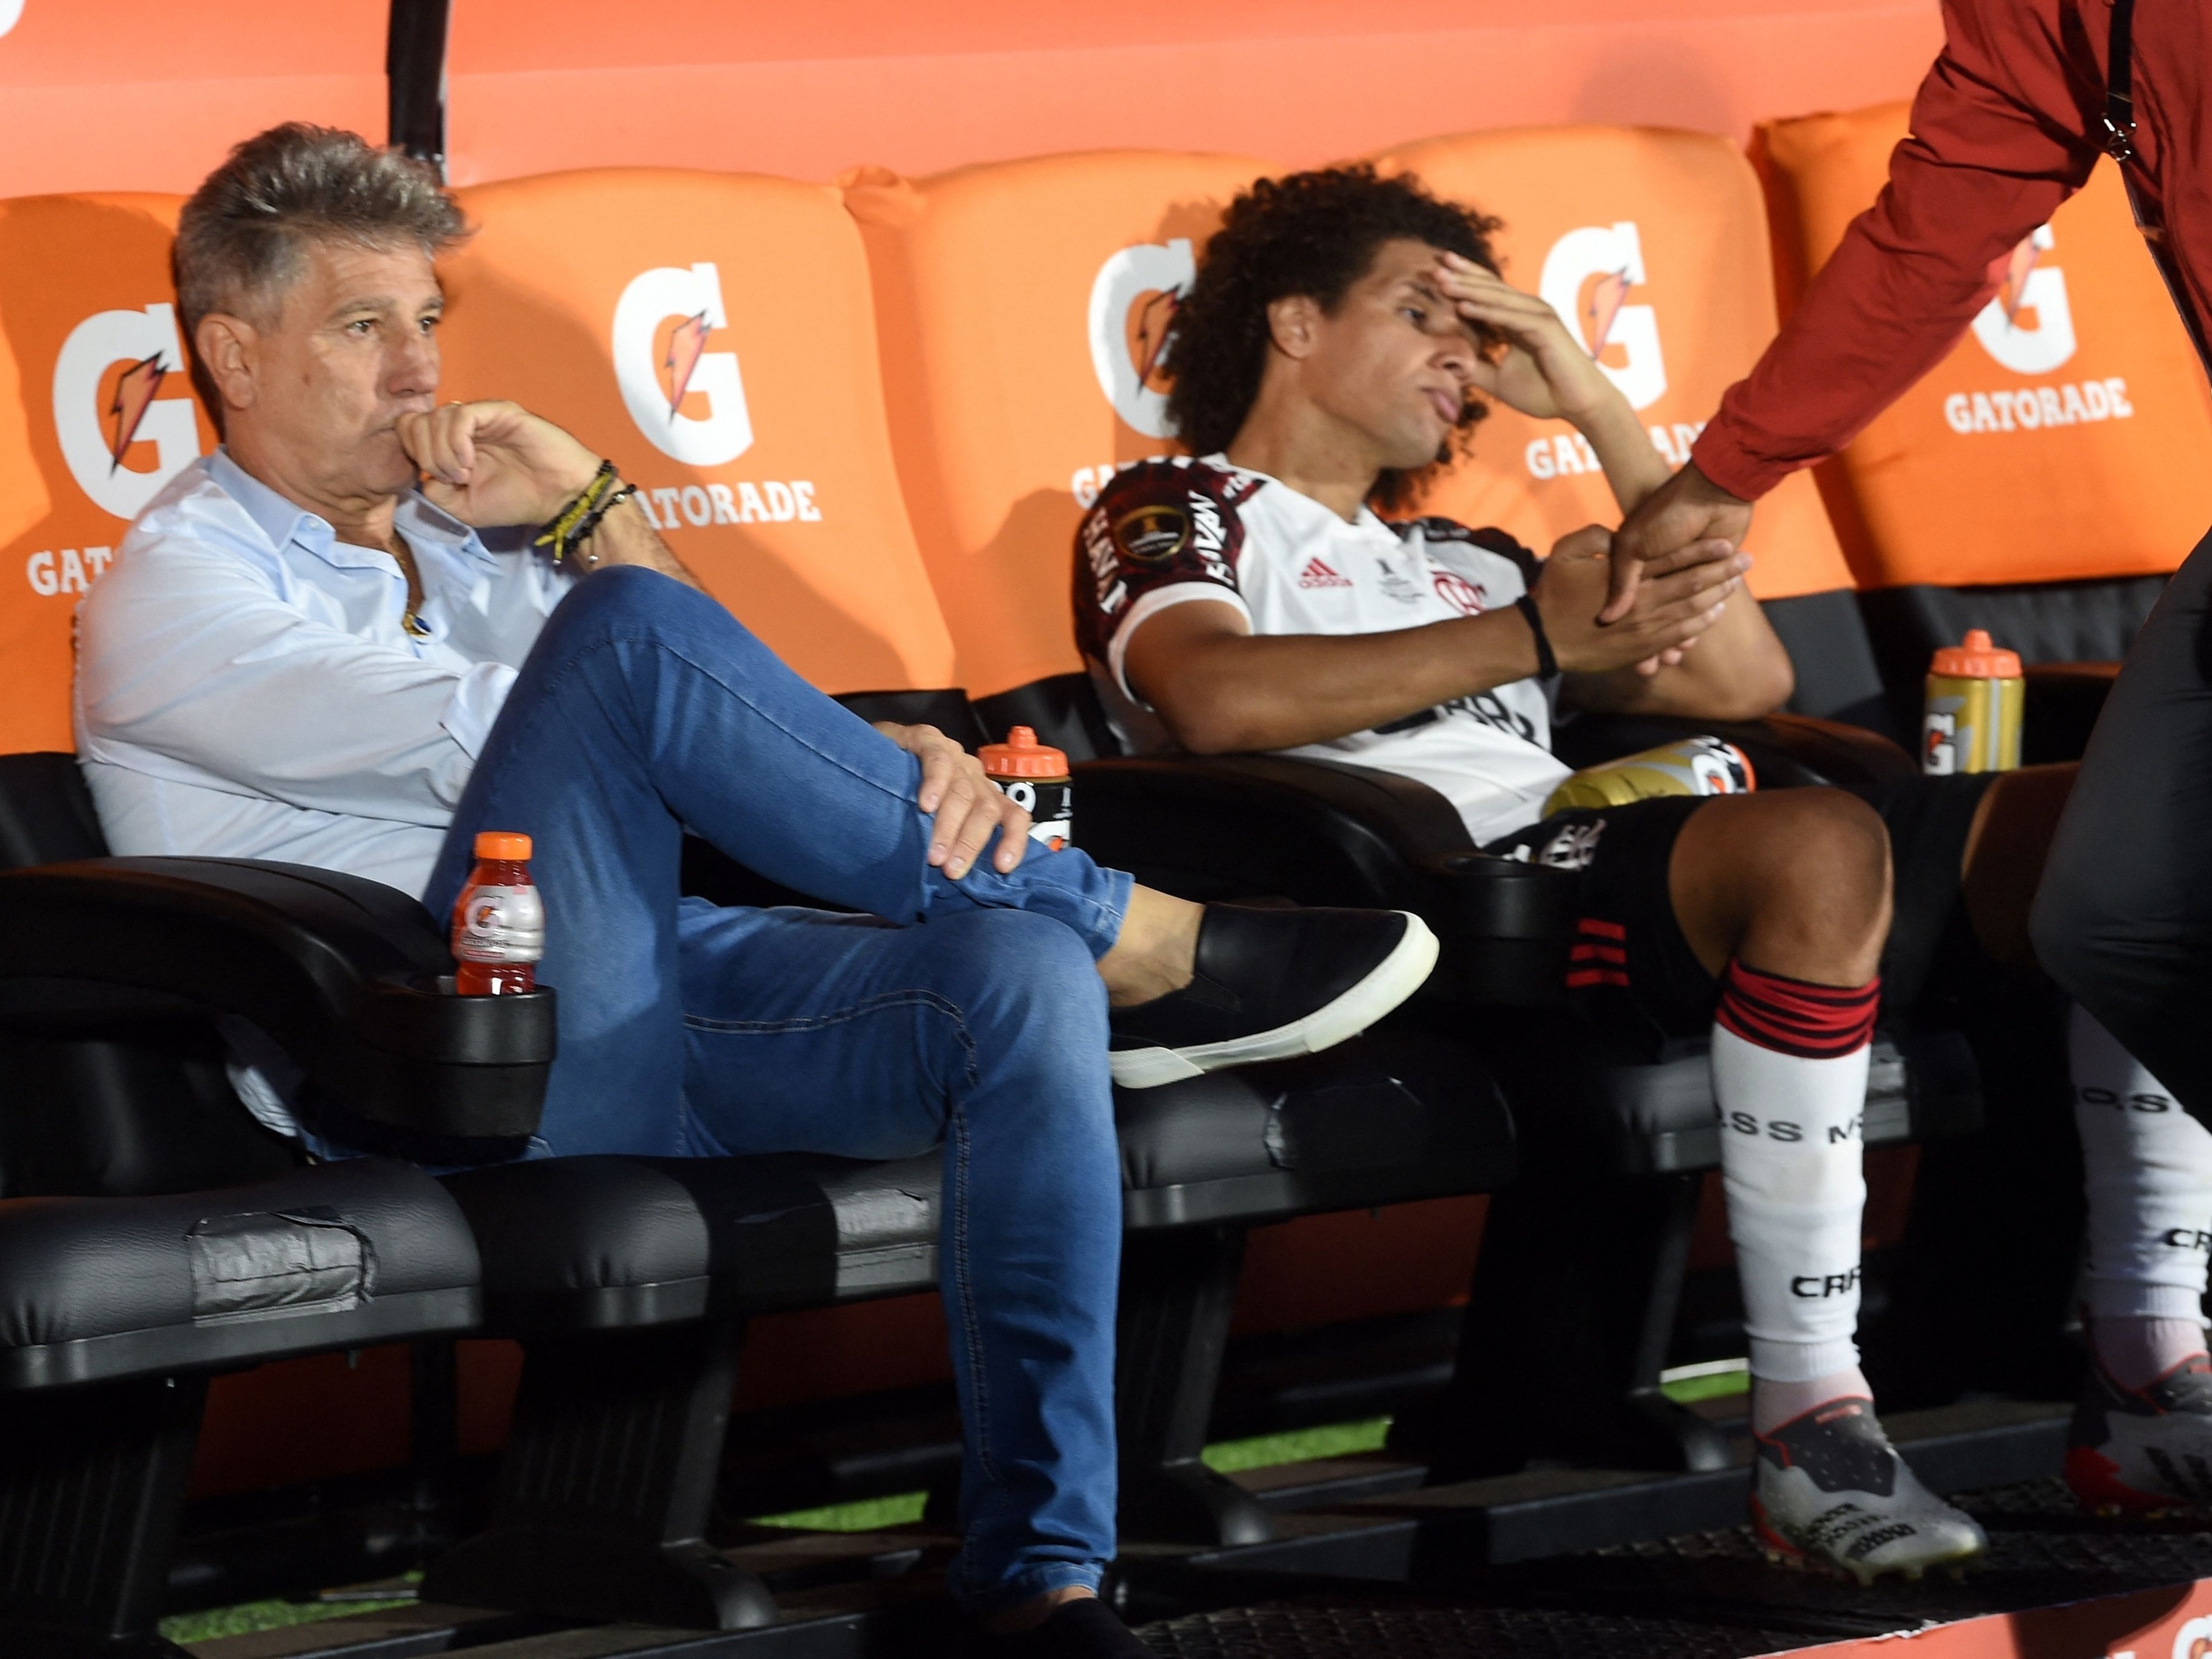 Colunistas opinam: Renato deve ser demitido antes da final da Libertadores?  - 28/10/2021 - UOL Esporte